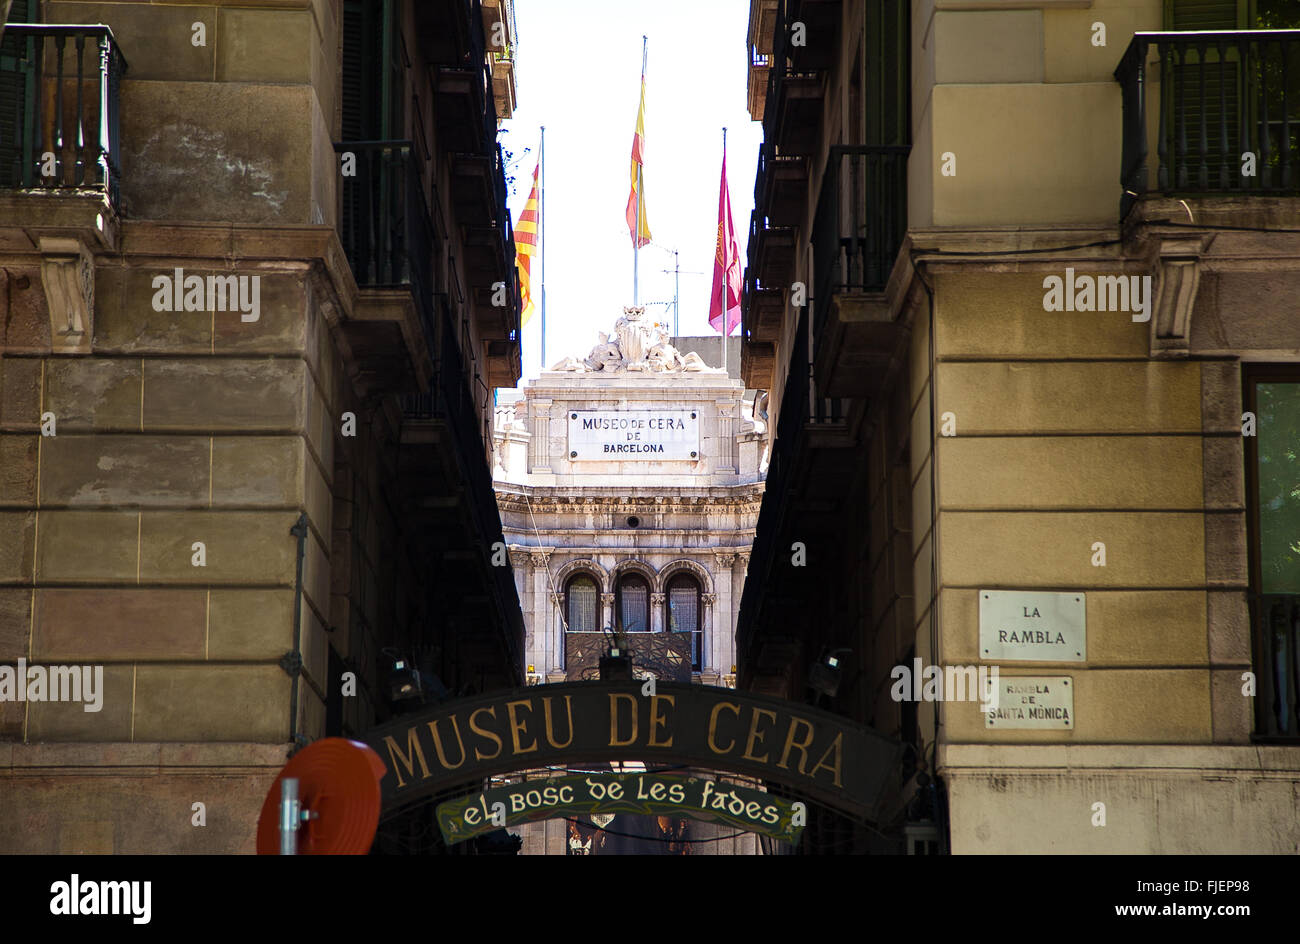 Ein Wachsfigurenkabinett - Museo de Cera de in Barcelona Stockfoto